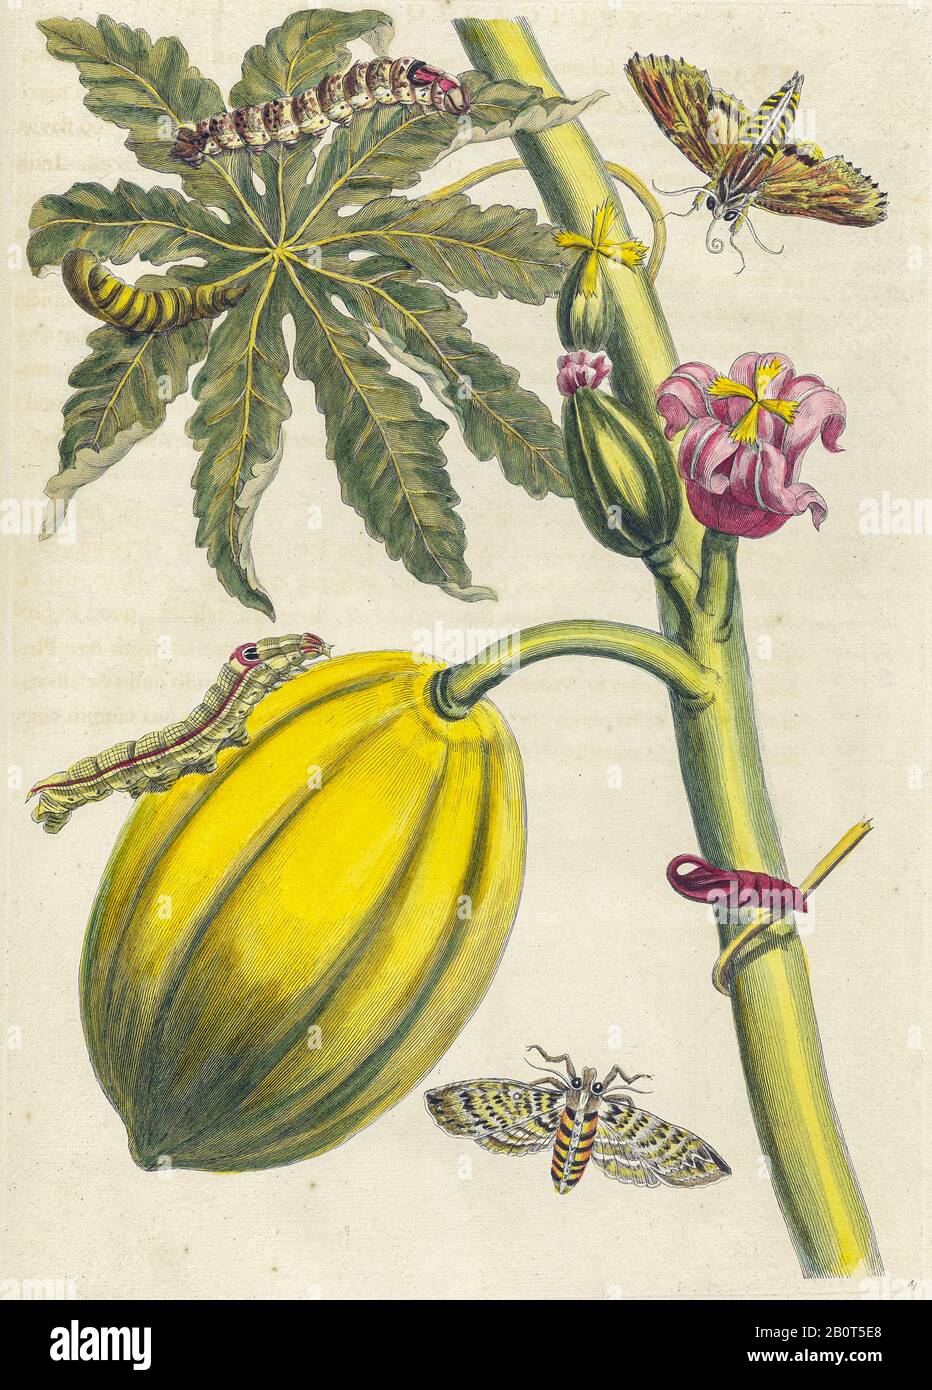 Pianta e farfalla da Metamorphosis insetttorum Surinamensium (insetti Suriname) pubblicato un libro del 18th secolo colorato a mano da Maria Sibylla Merian Foto Stock